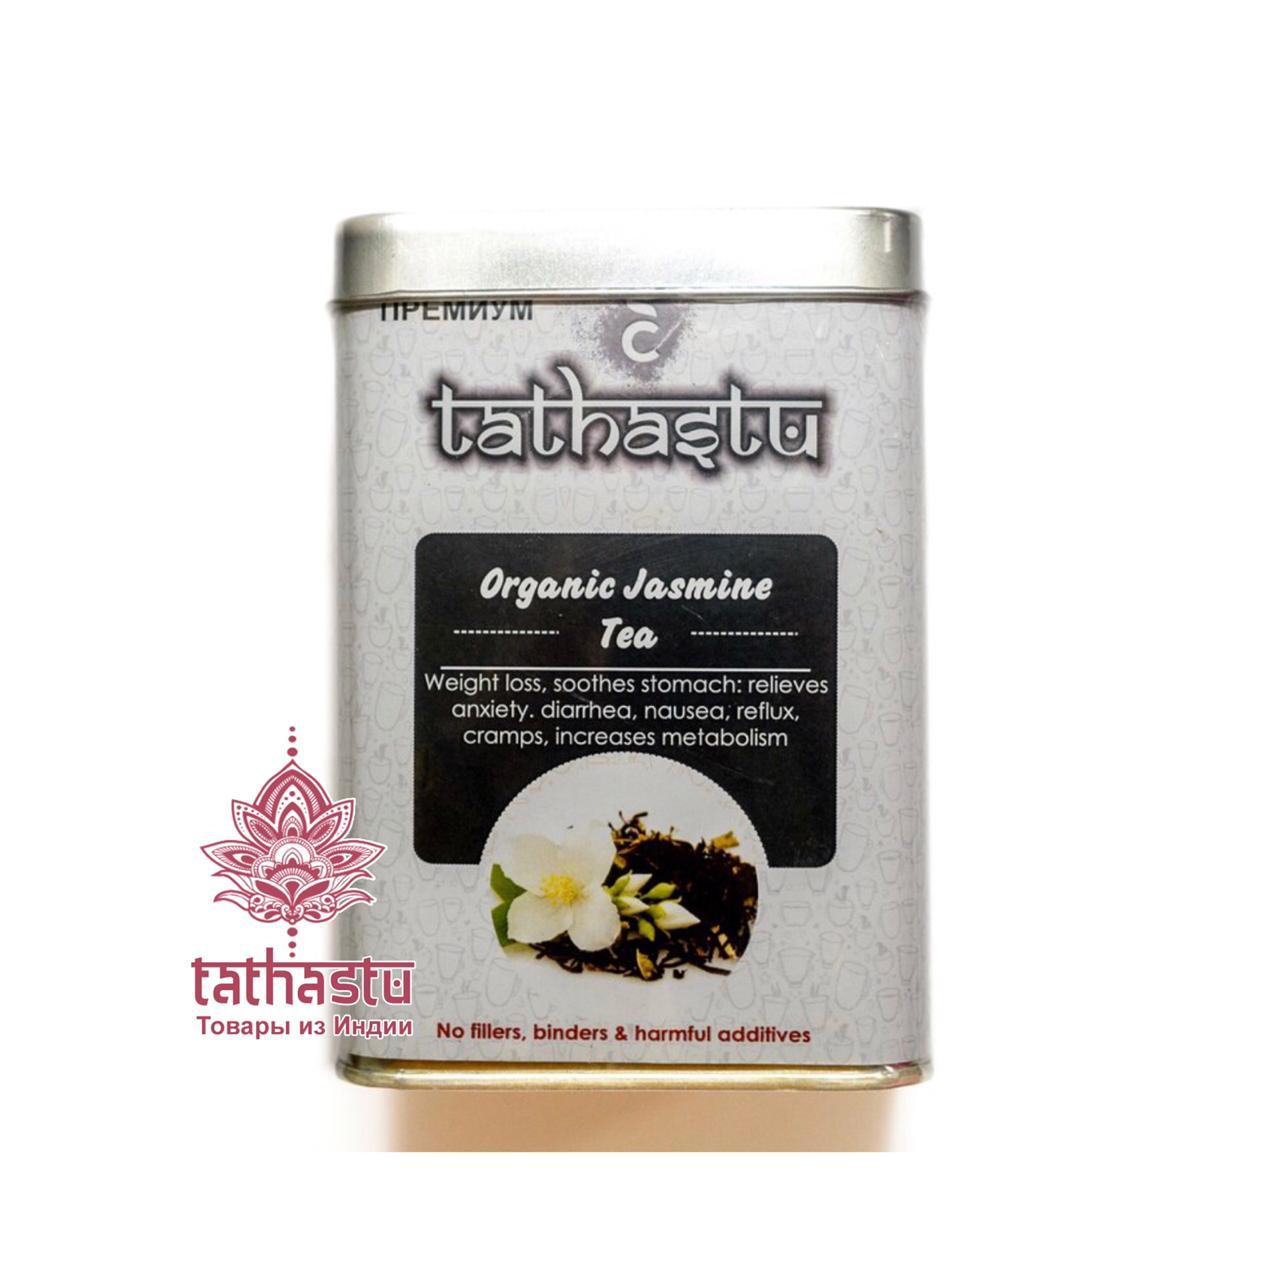 Черный чай татхасту с жасмином. Tathastu товары и индии